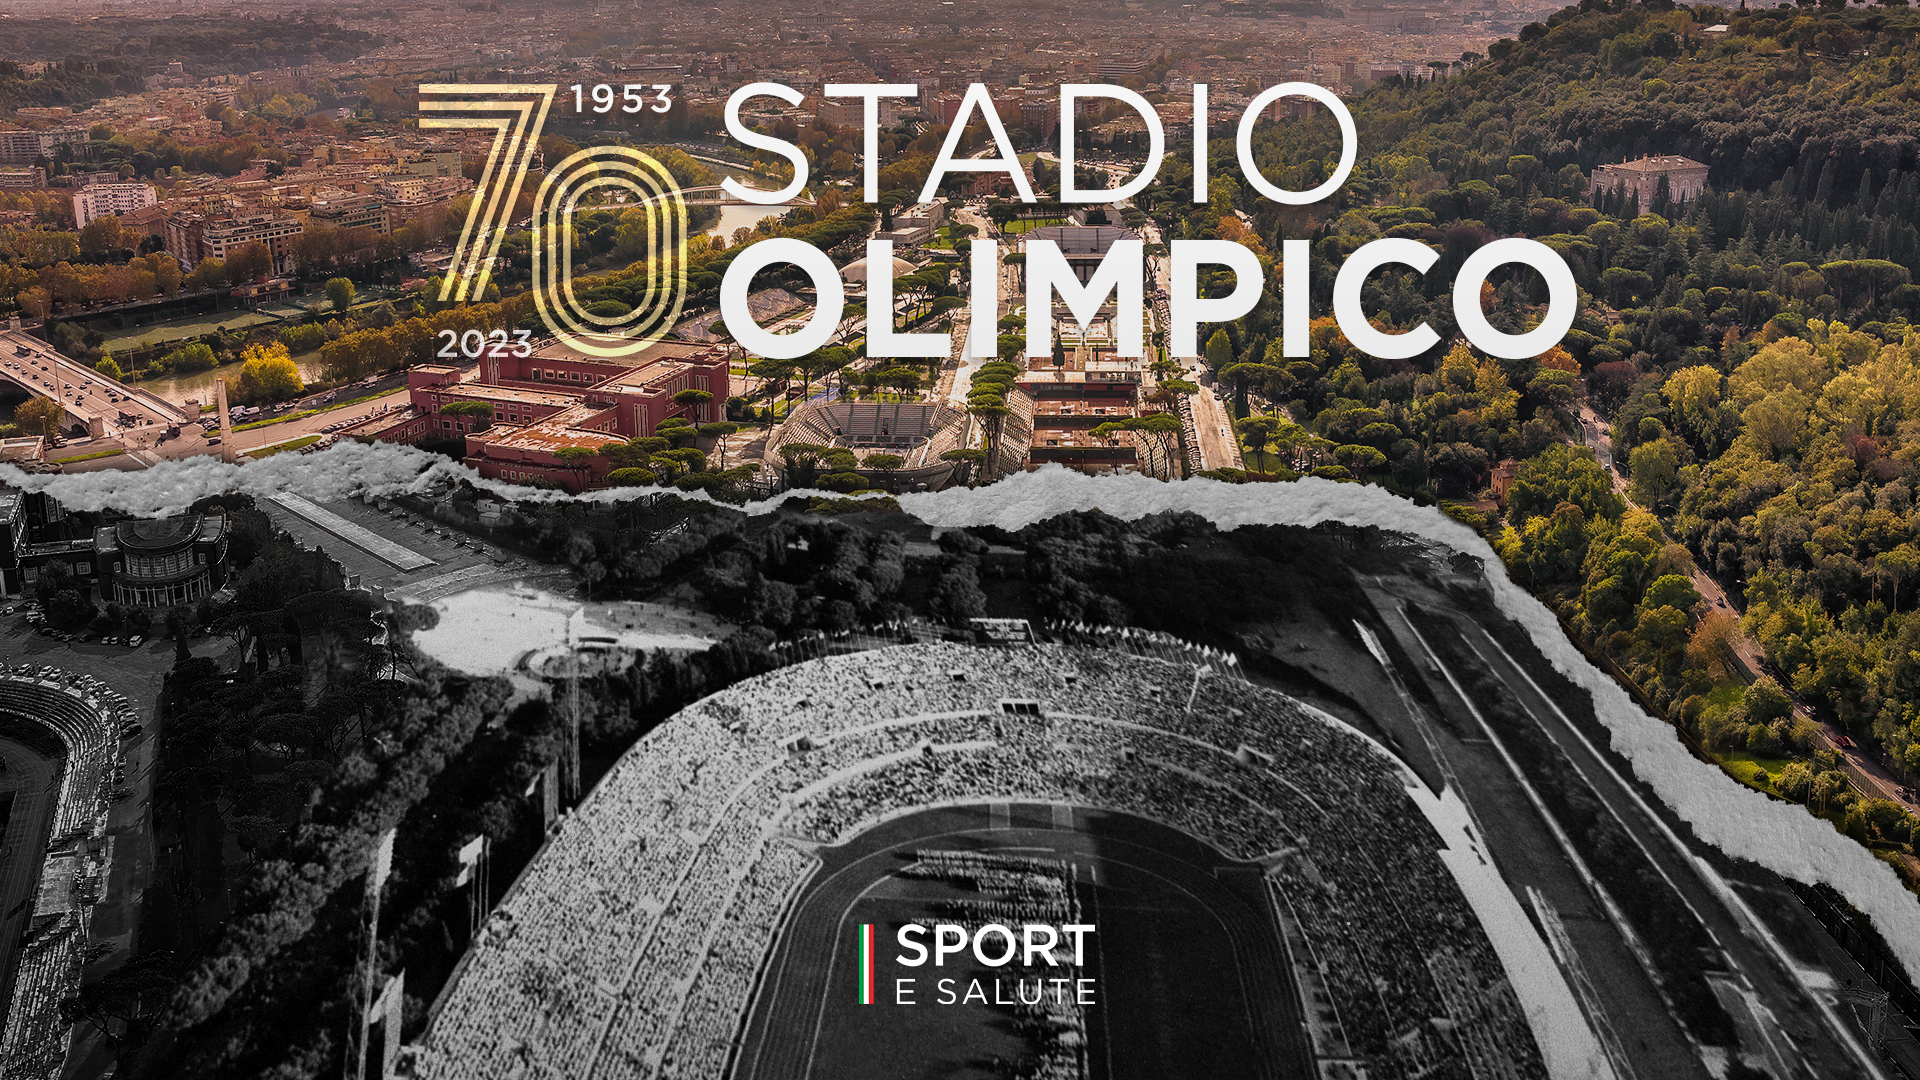 images/articoli/STADIO-OLIMPICO-70.png